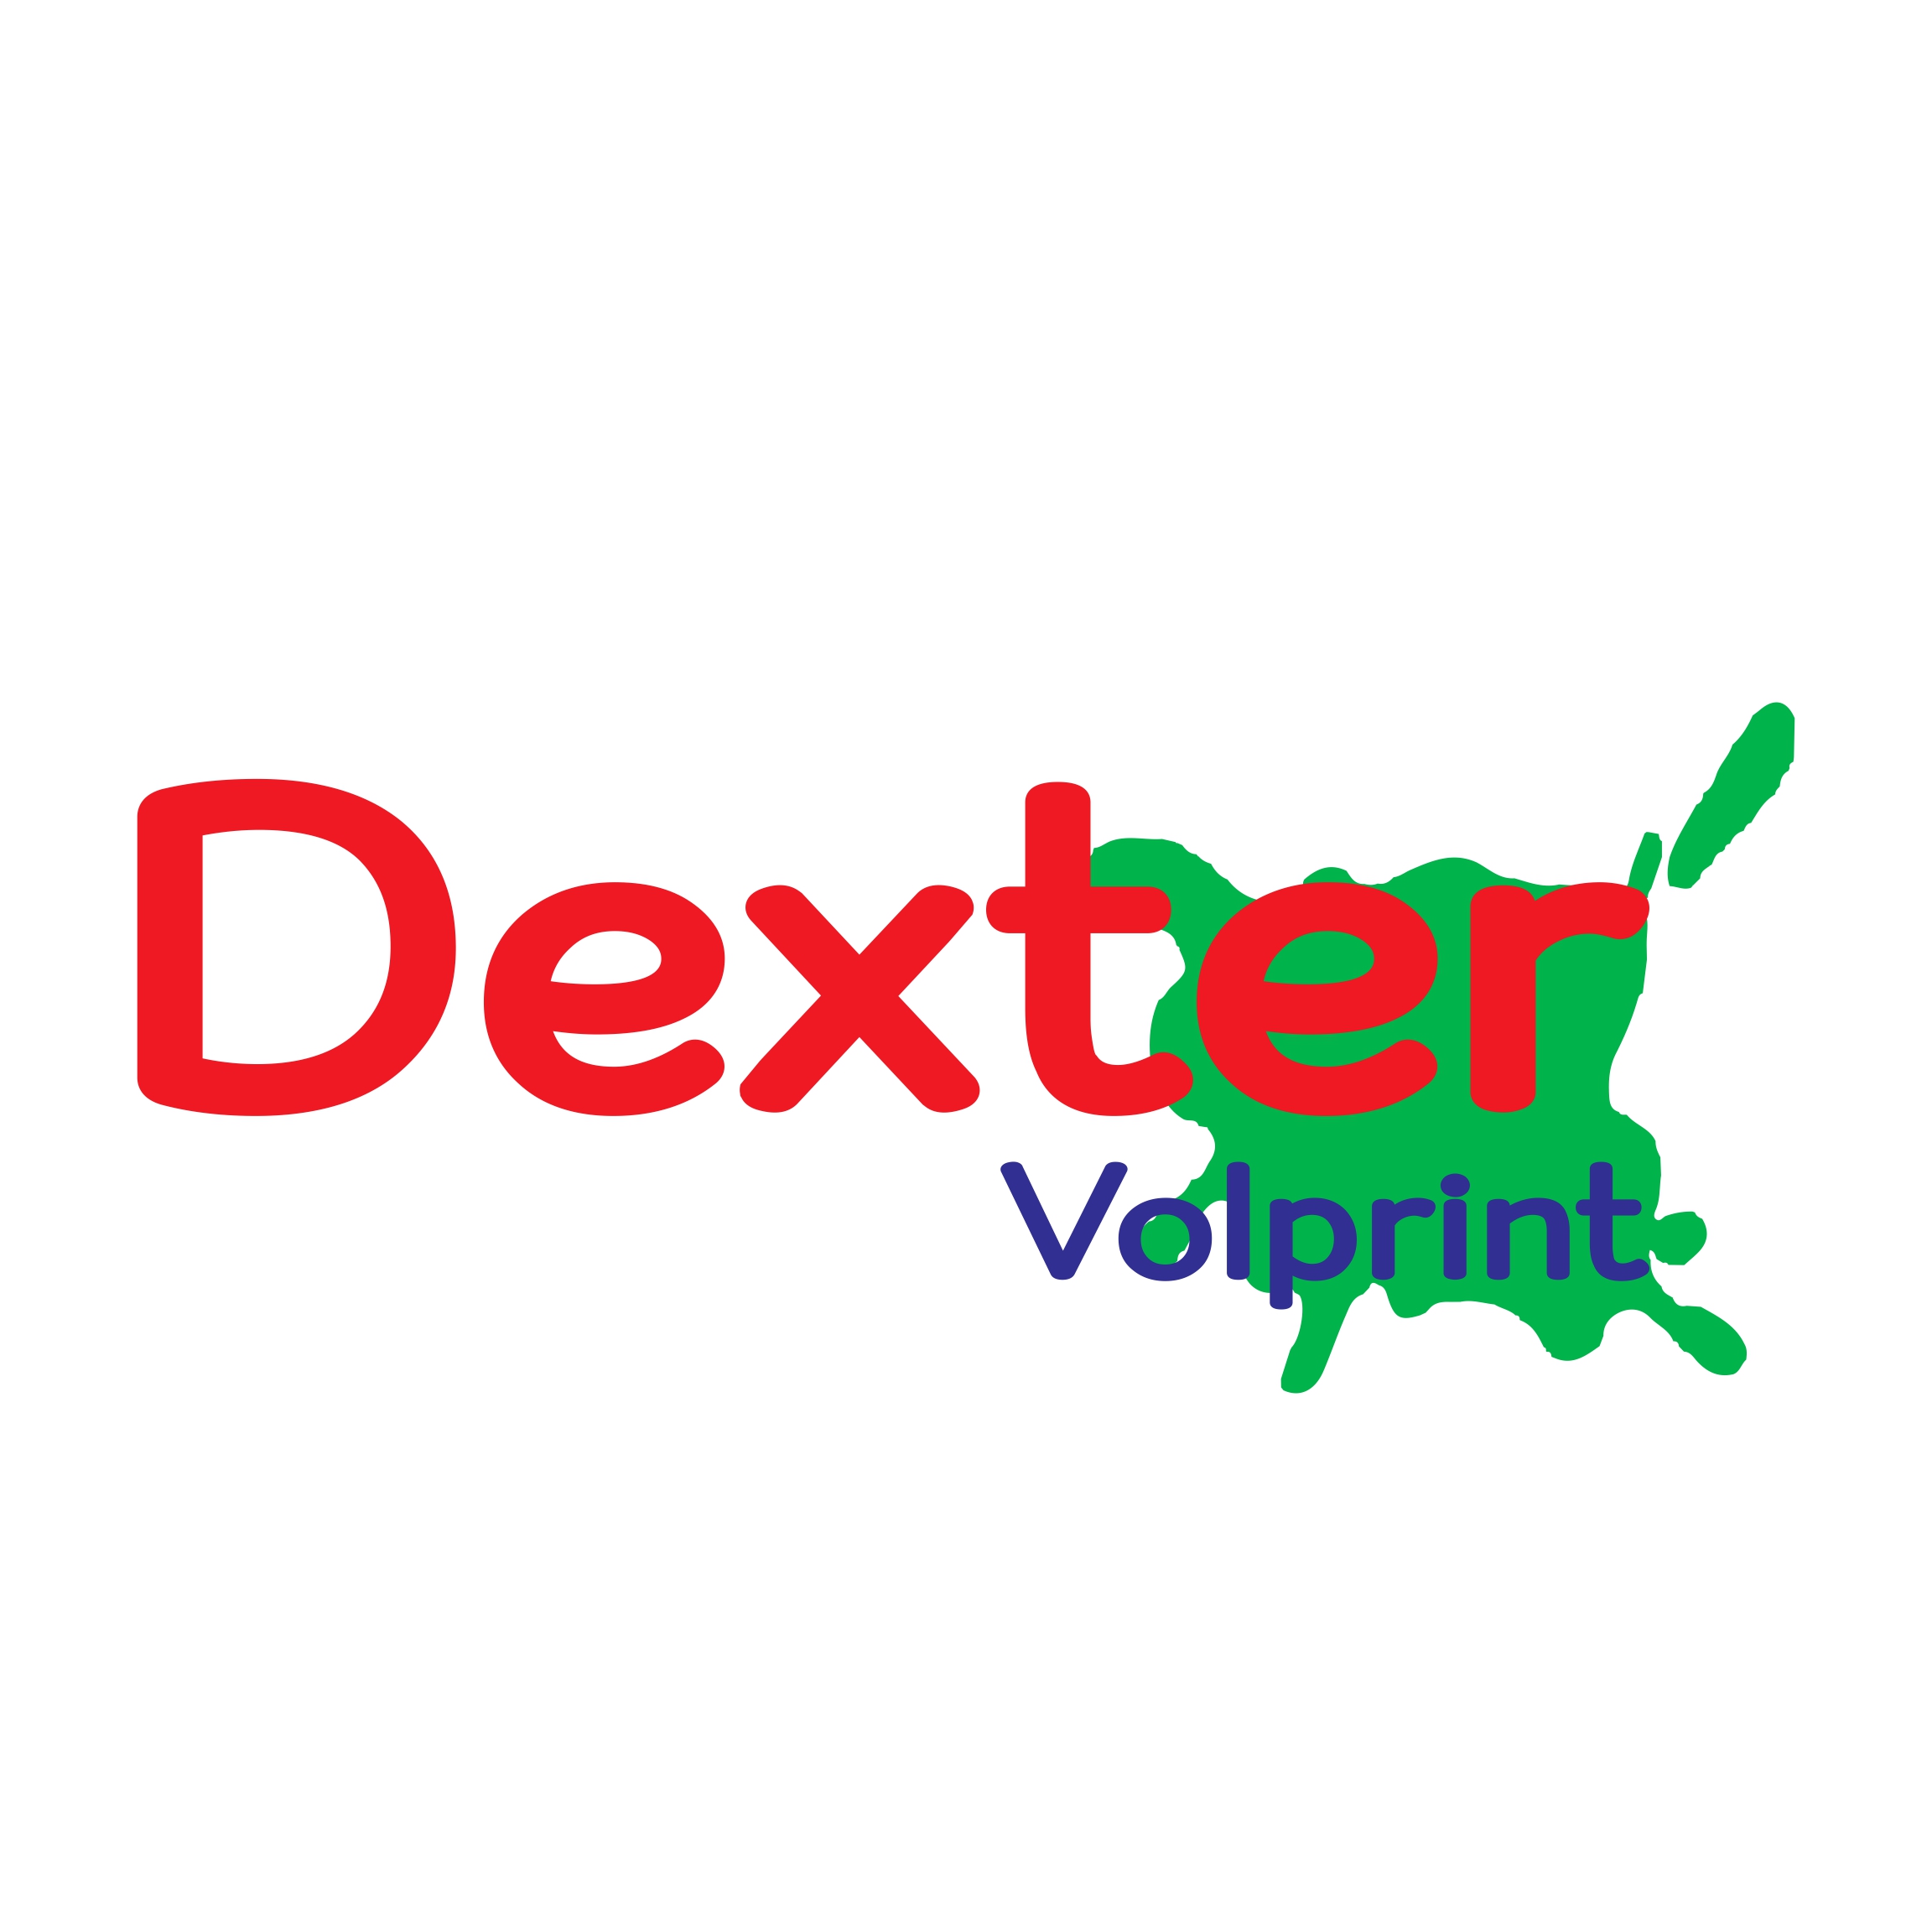 Dexter Volprint